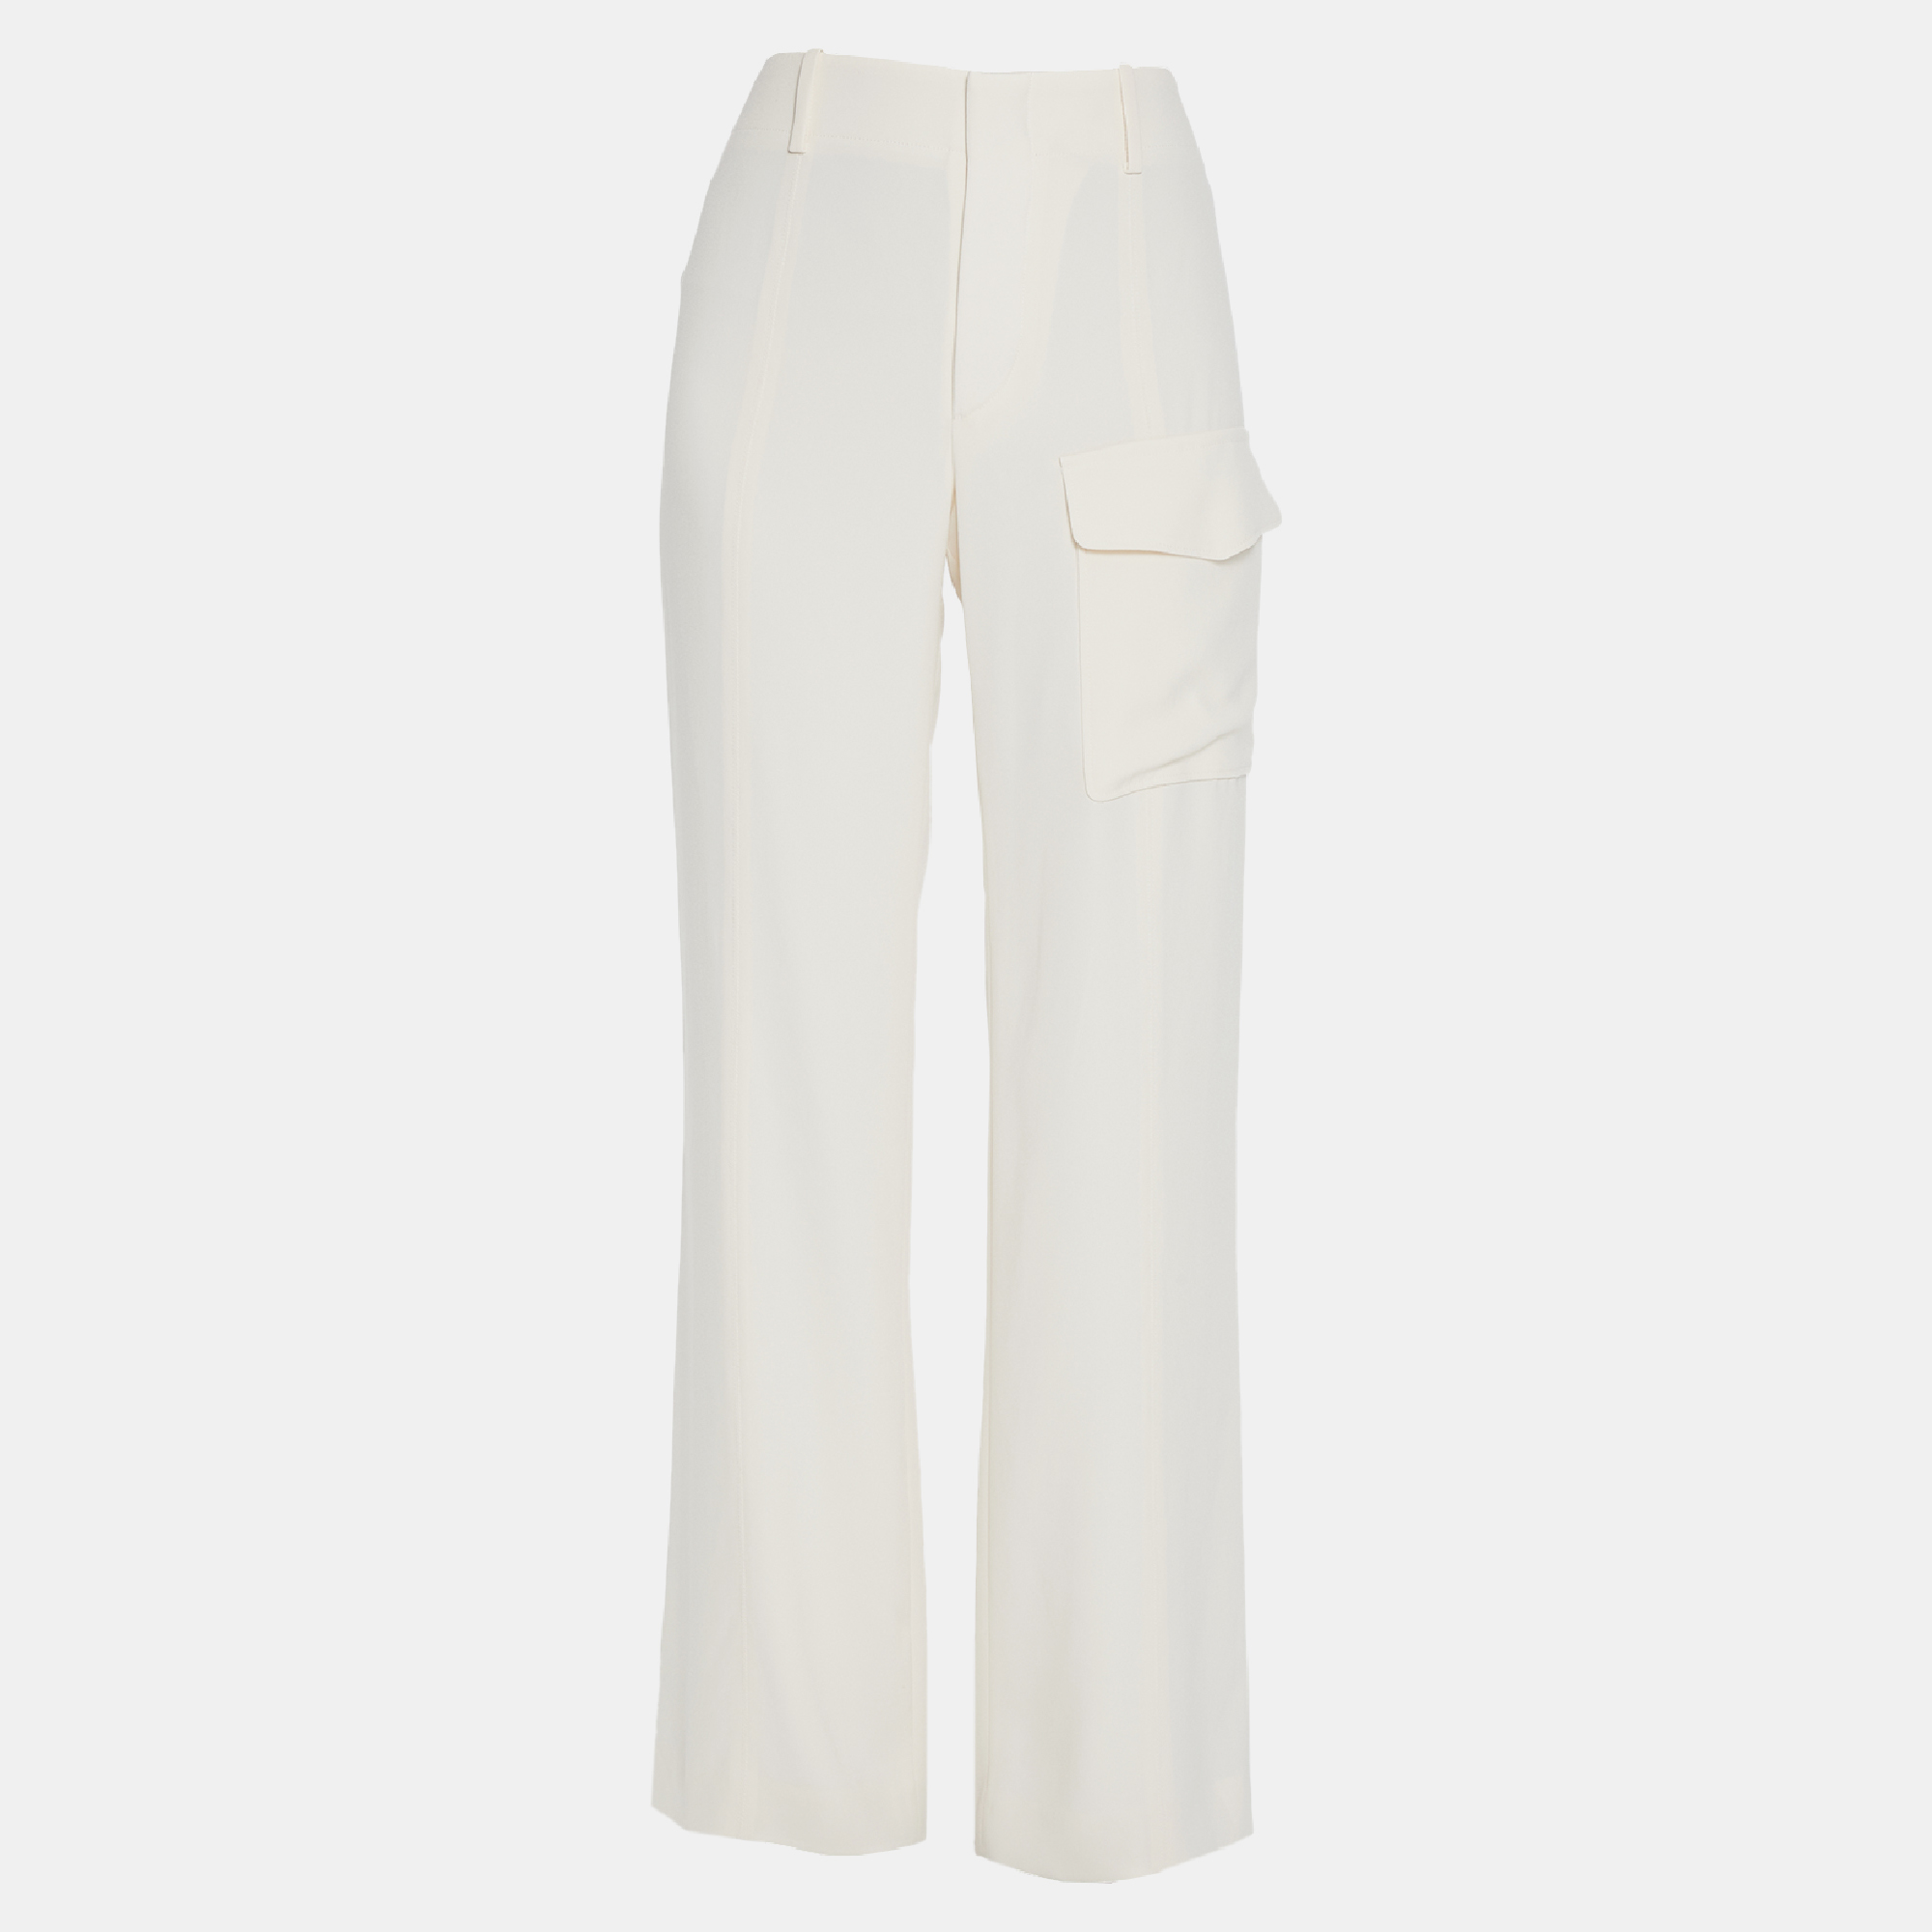 Chloe cream triacetate trousers size 38